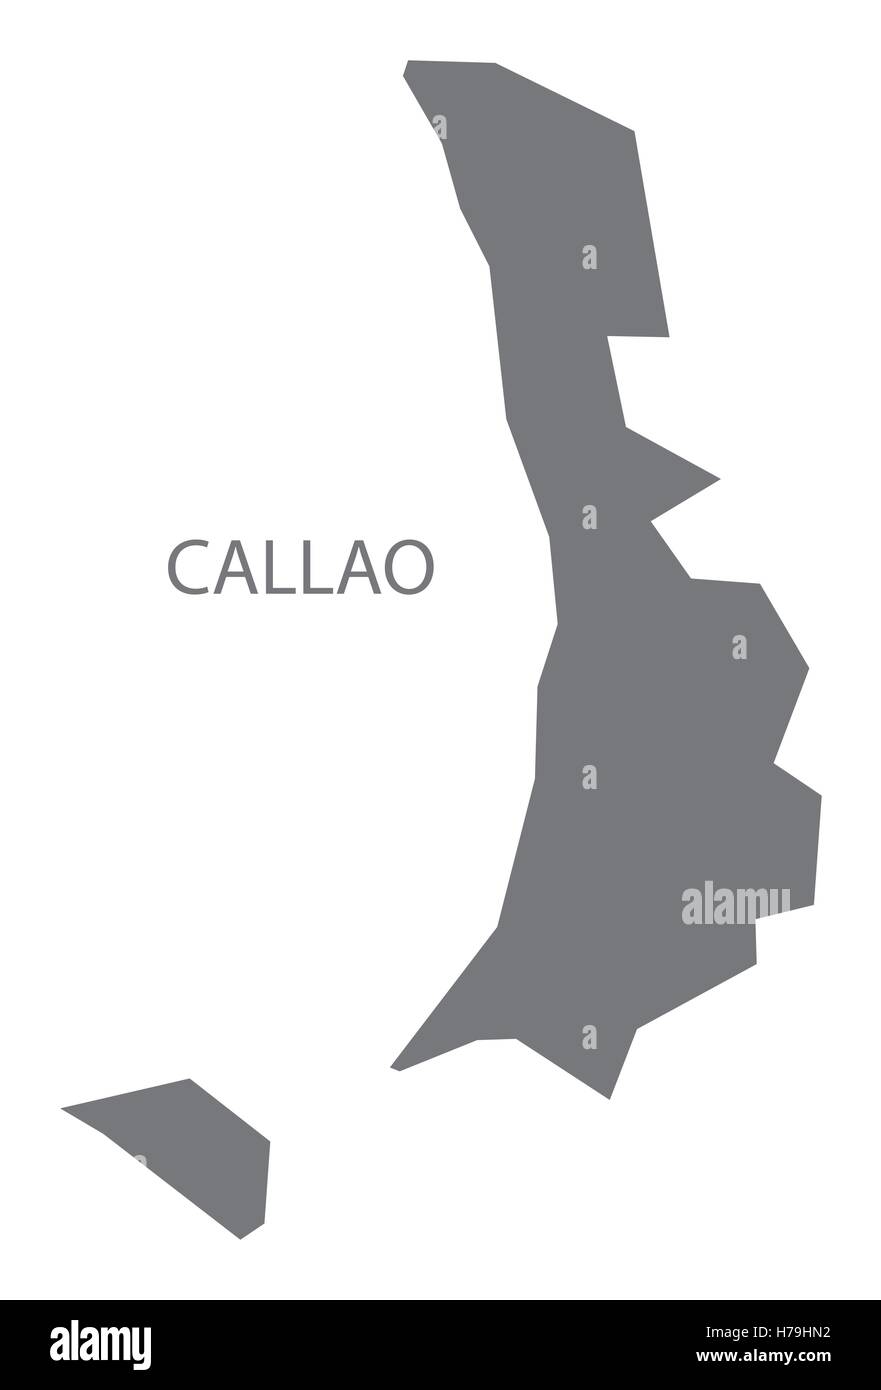 Callao Peru Map grey Stock Vector